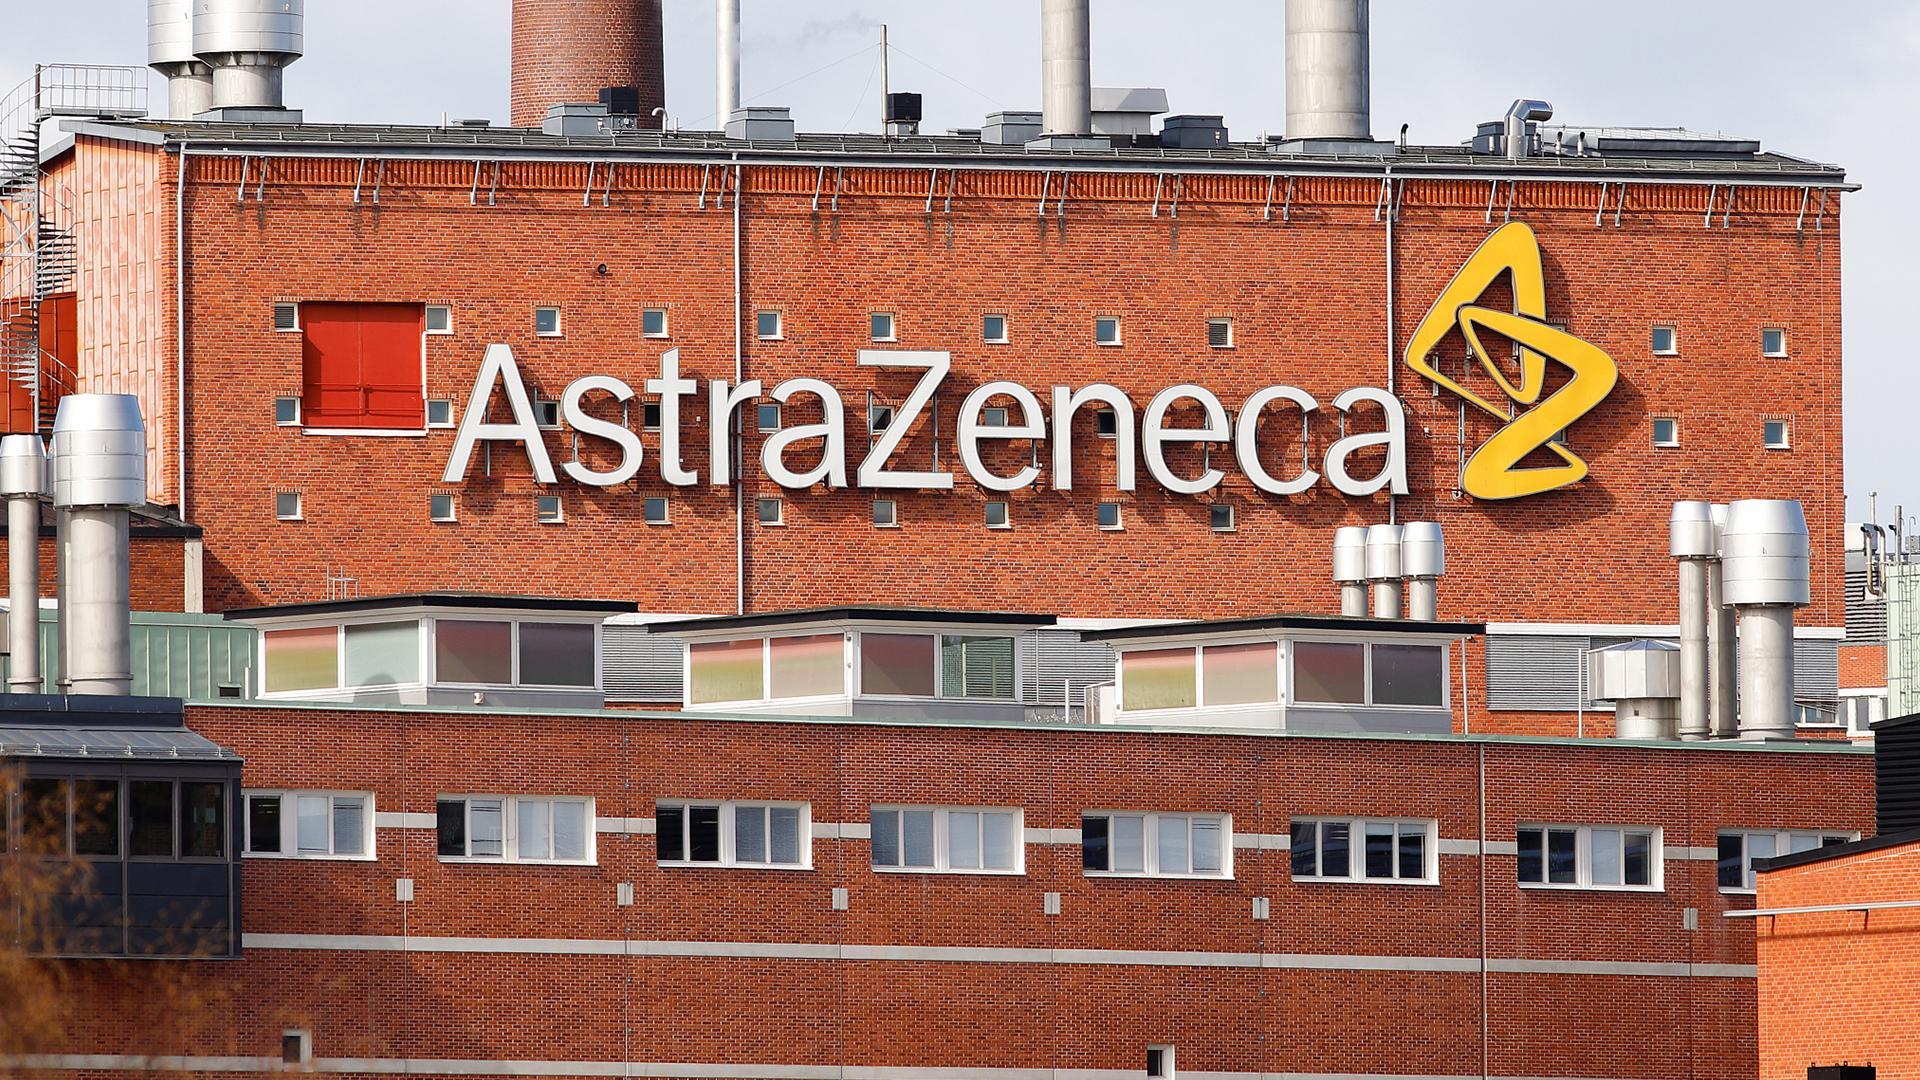 Một công ty khởi nghiệp của Đại học Hoàng gia London đã liên kết với AstraZeneca, một công ty dược sinh học lớn của Anh-Thụy Điển để khám phá các công dụng chữa bệnh của công nghệ vắc-xin mới. Ảnh: @AFP.